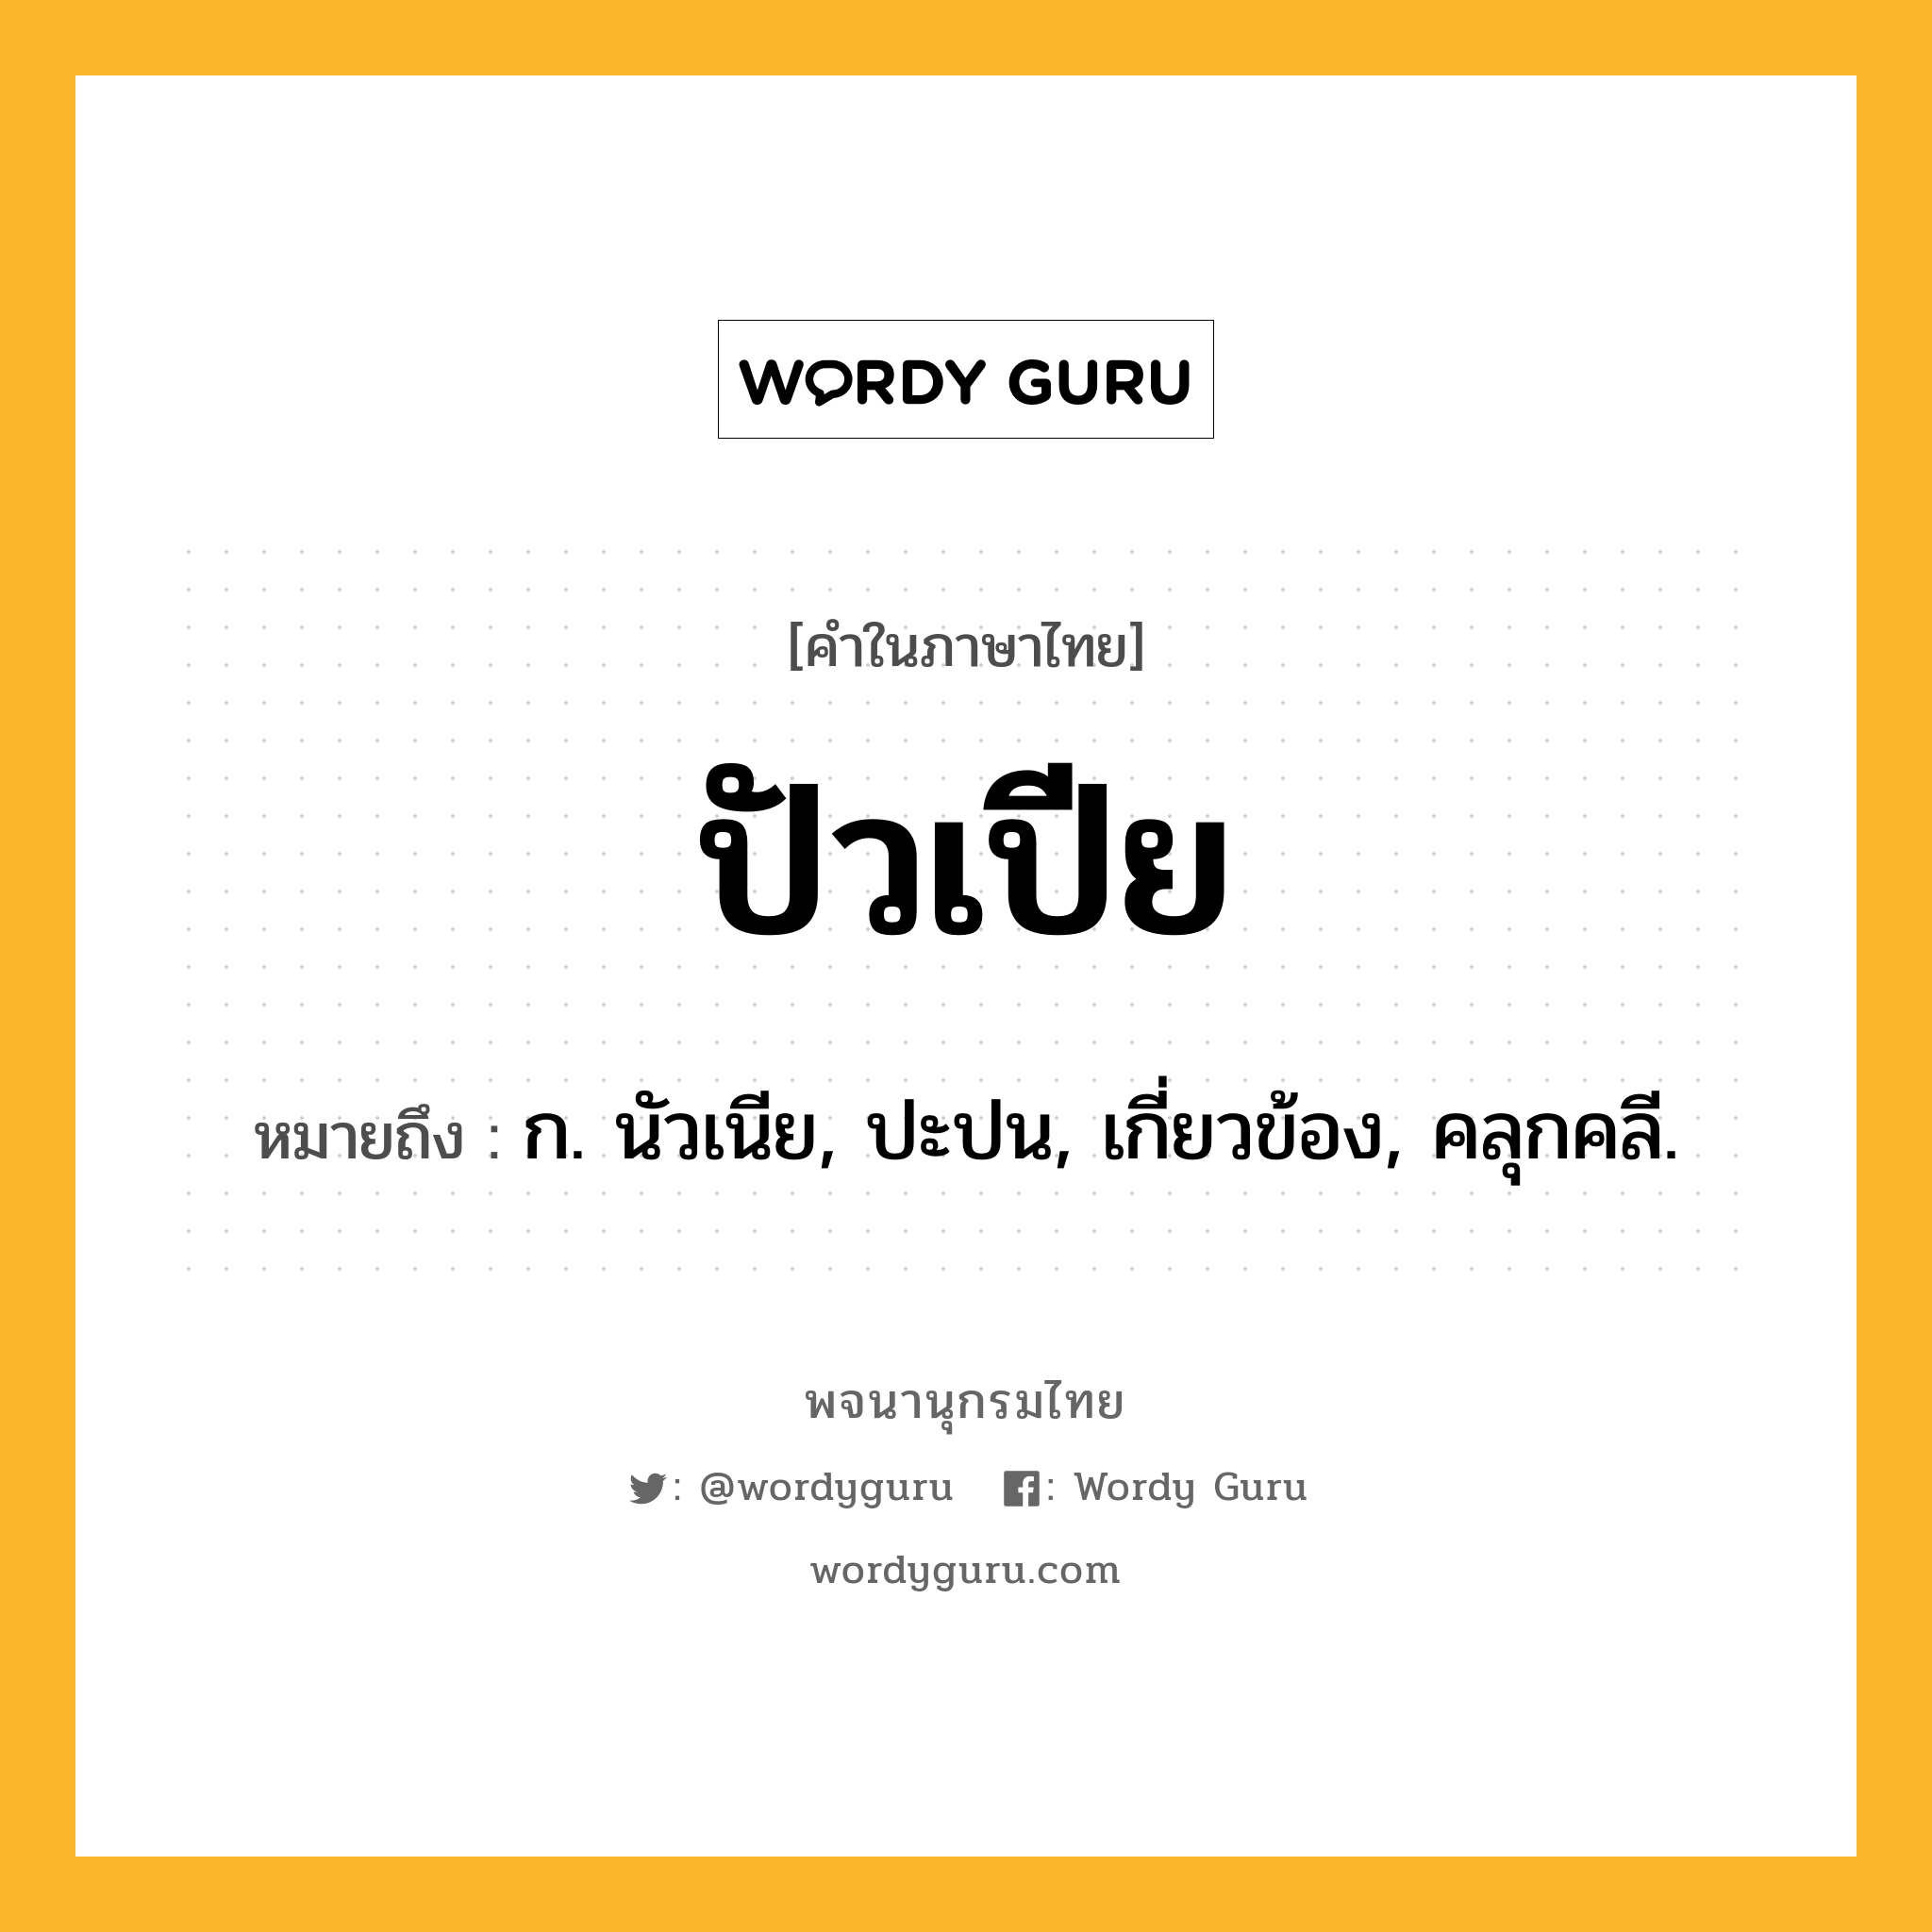 ปัวเปีย ความหมาย หมายถึงอะไร?, คำในภาษาไทย ปัวเปีย หมายถึง ก. นัวเนีย, ปะปน, เกี่ยวข้อง, คลุกคลี.